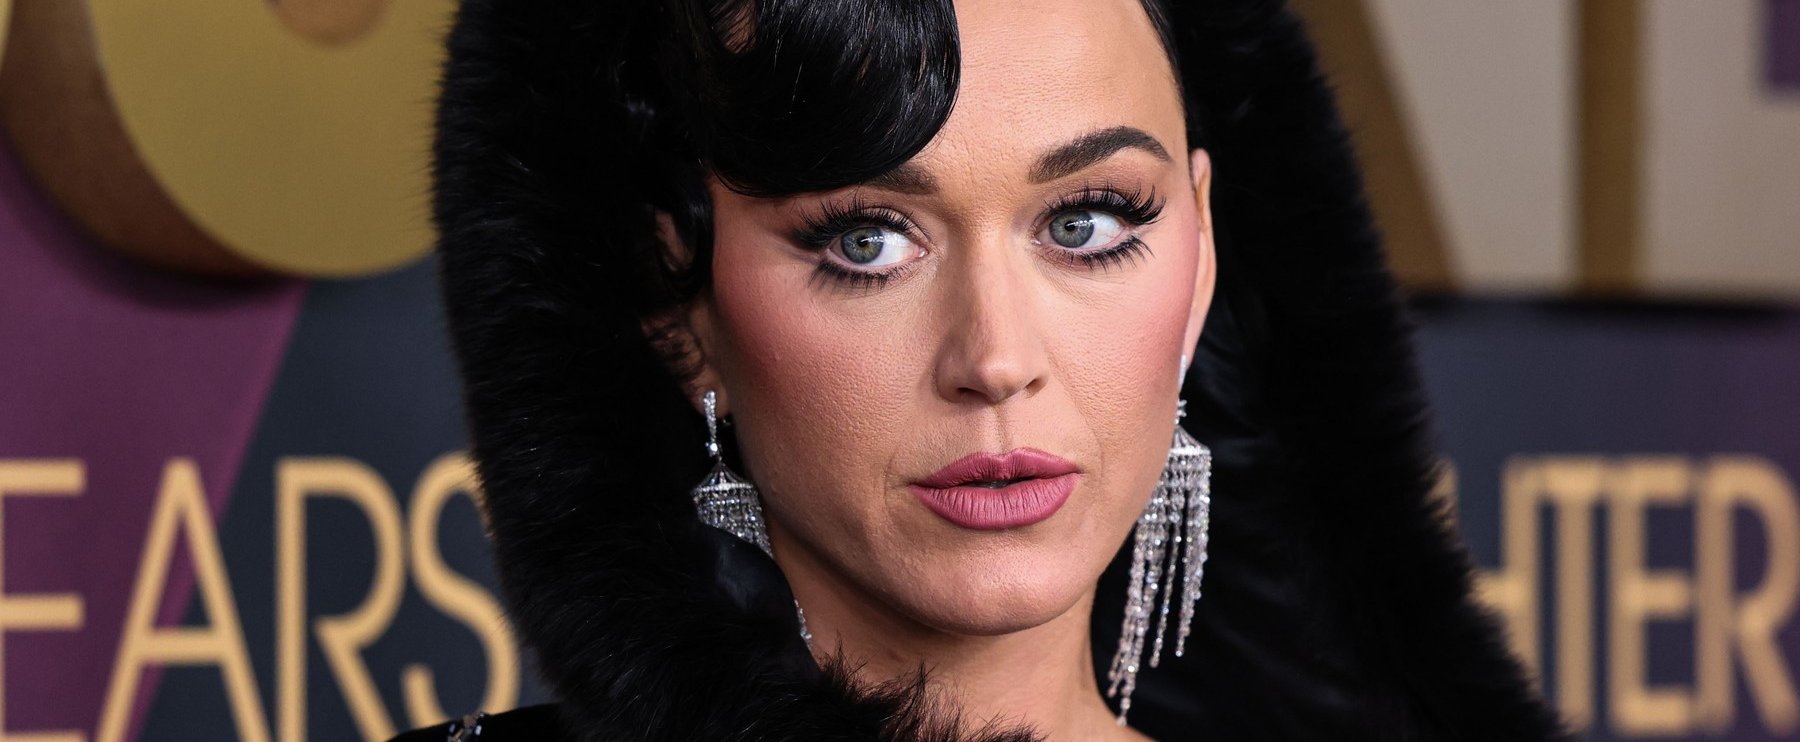 Meglepő fotók kerültek ki Katy Perry-ről, minden rendben van a popsztárral?